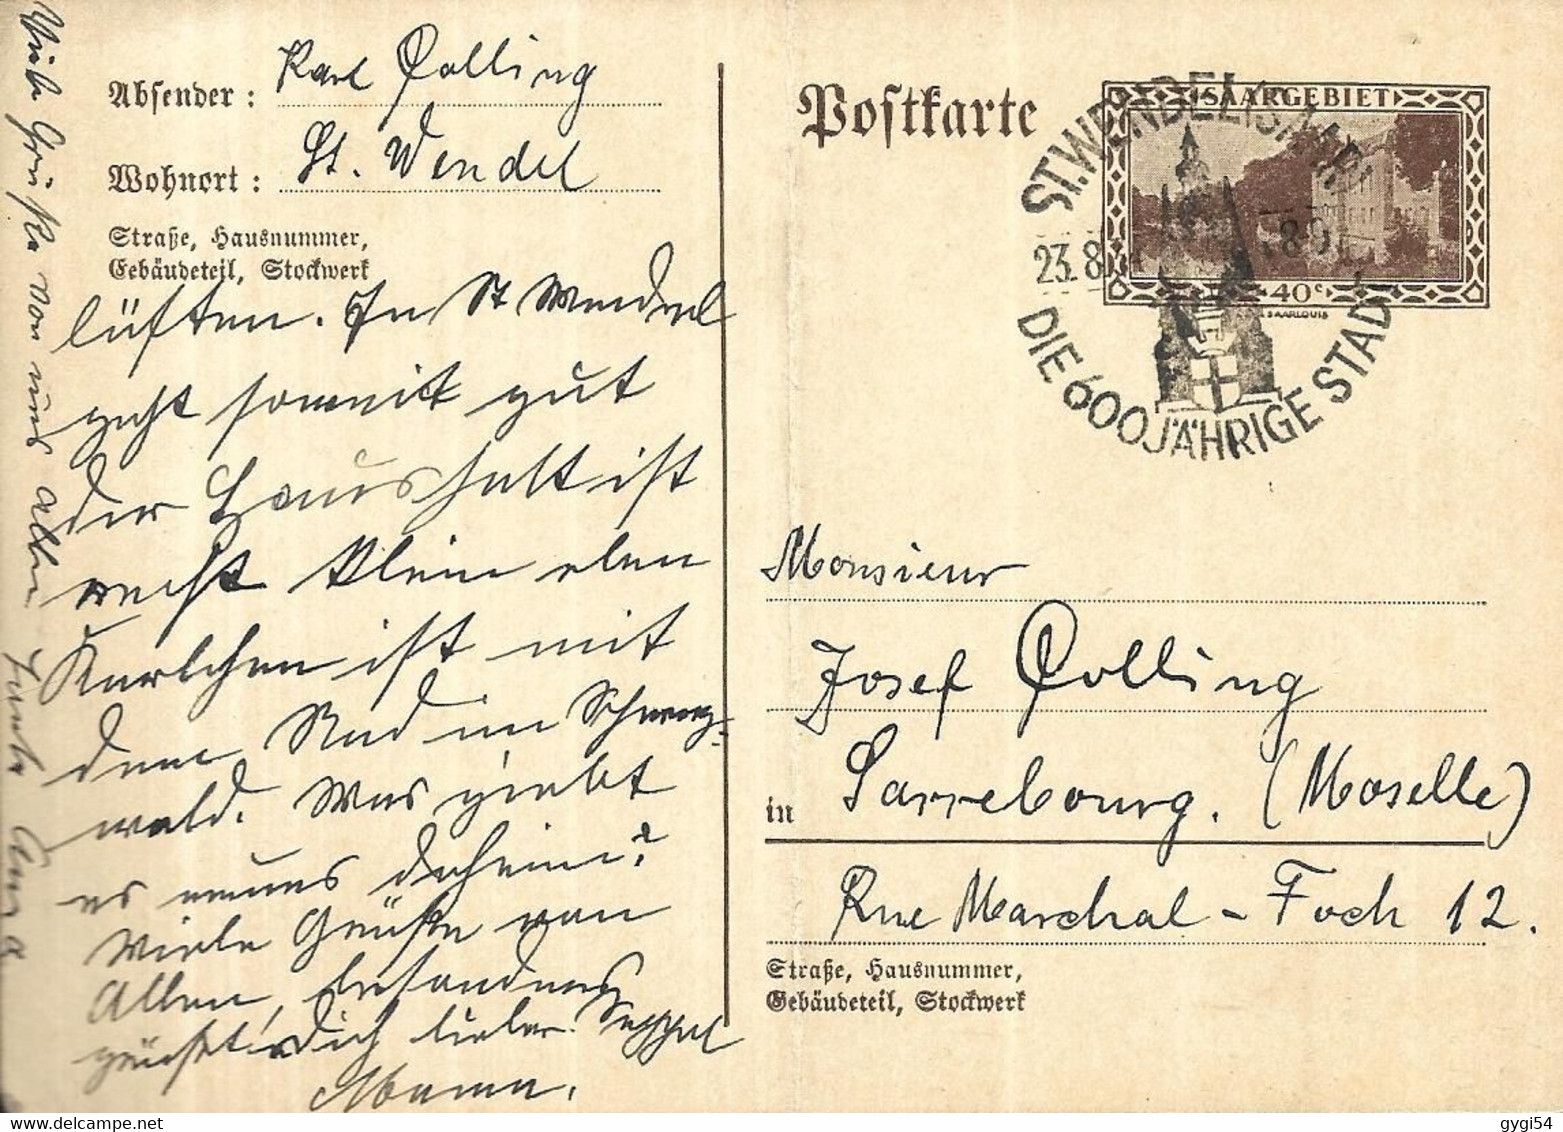 SARRE   Entier Postal 22 08 1934 SUR   Carte DE ST Wendel Pour Sarrebourg - Postal Stationery